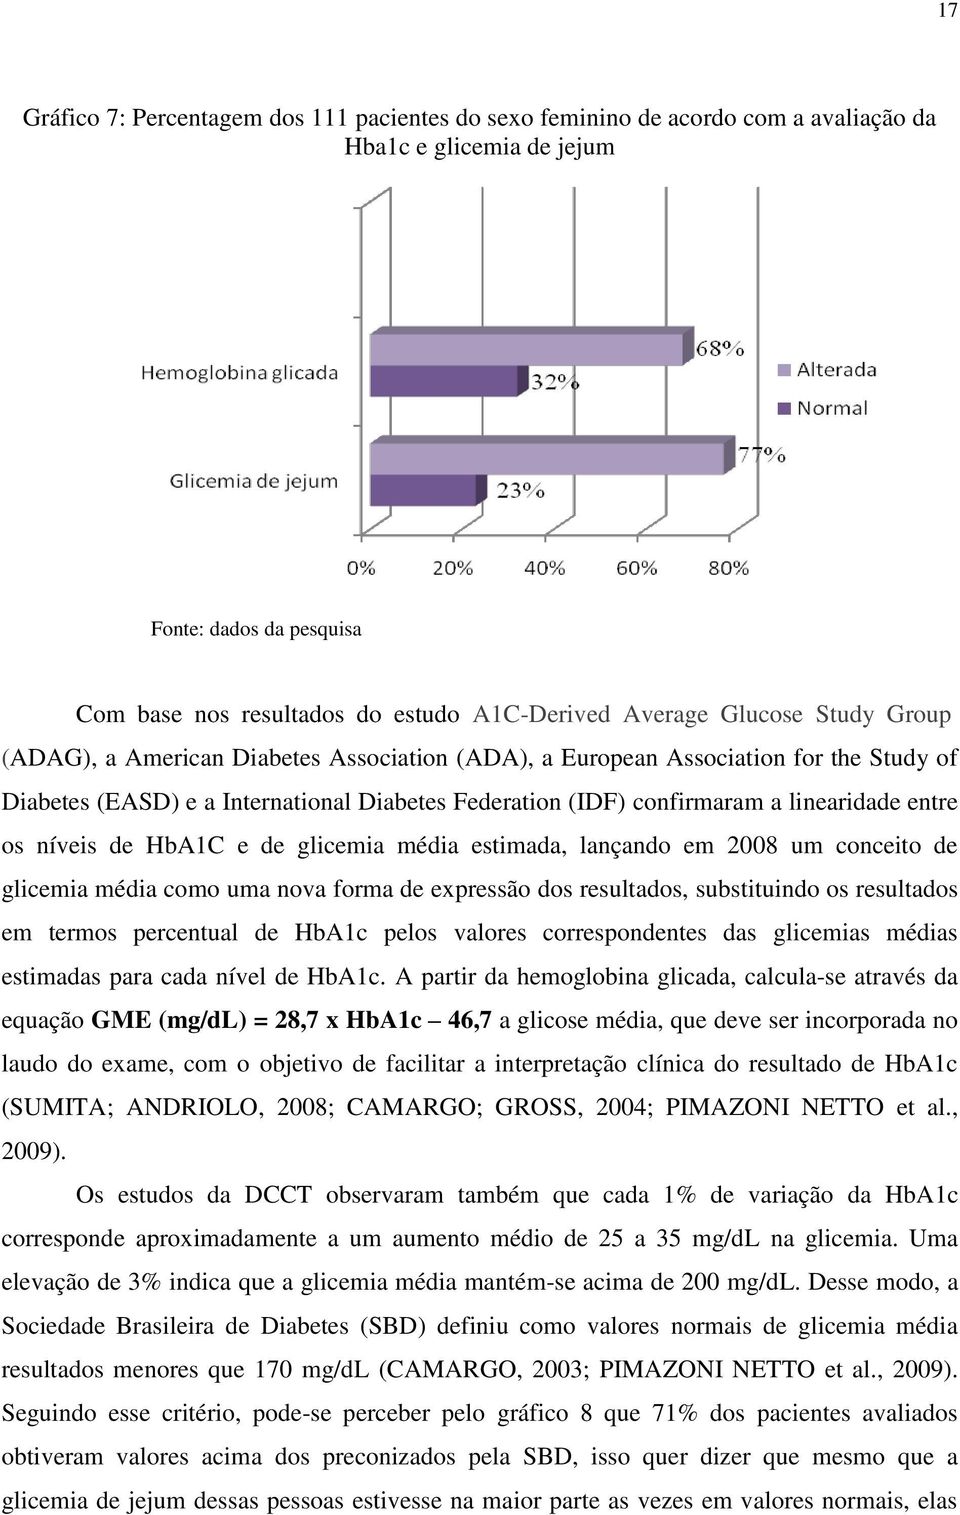 os níveis de HbA1C e de glicemia média estimada, lançando em 2008 um conceito de glicemia média como uma nova forma de expressão dos resultados, substituindo os resultados em termos percentual de